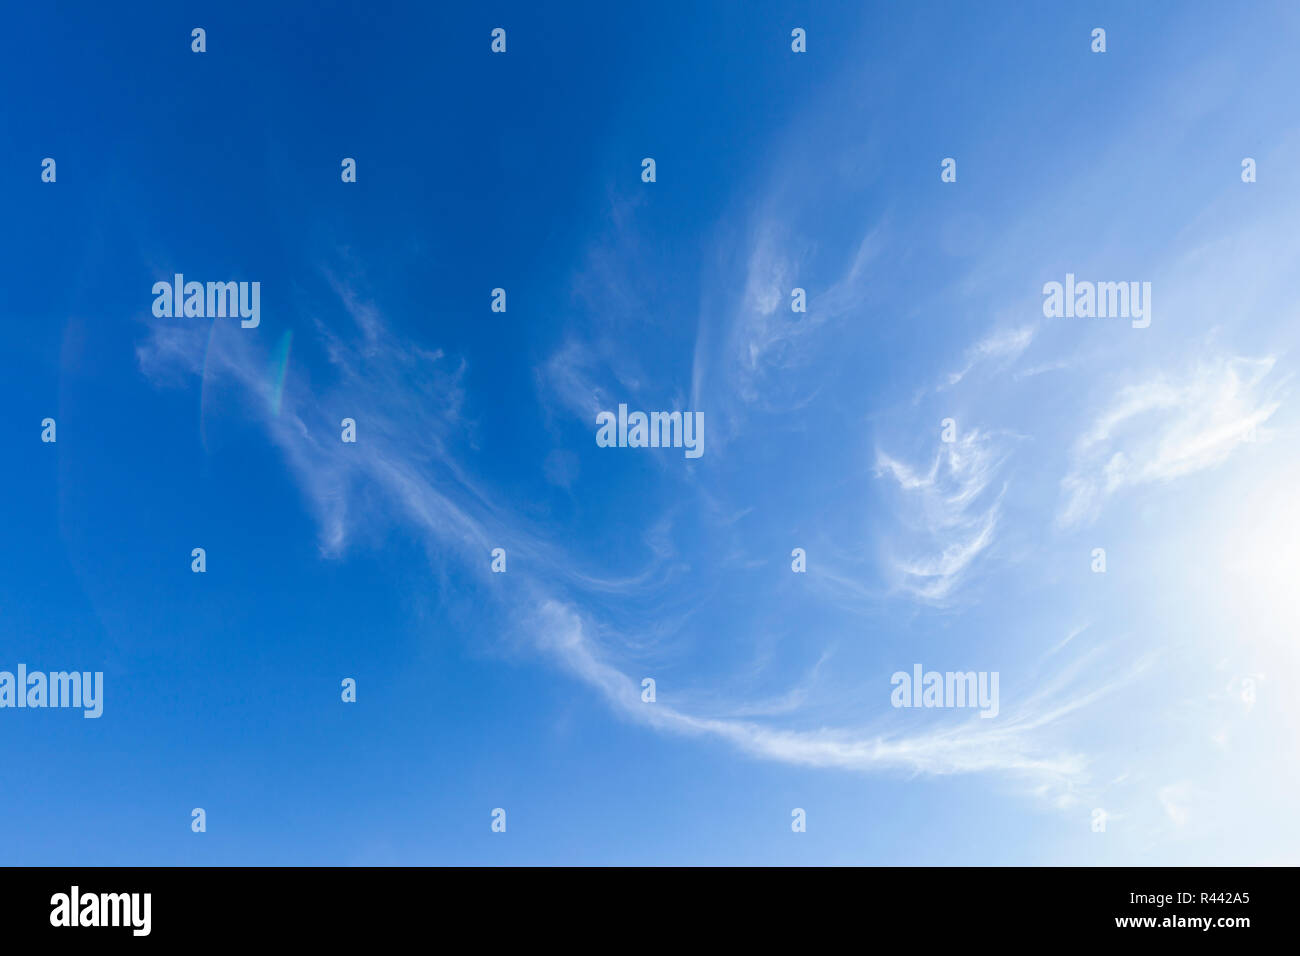 Schöne wispy weißen Wolken und blauer Himmel. Hohe Detailtreue und einzigartigen Muster Stockfoto